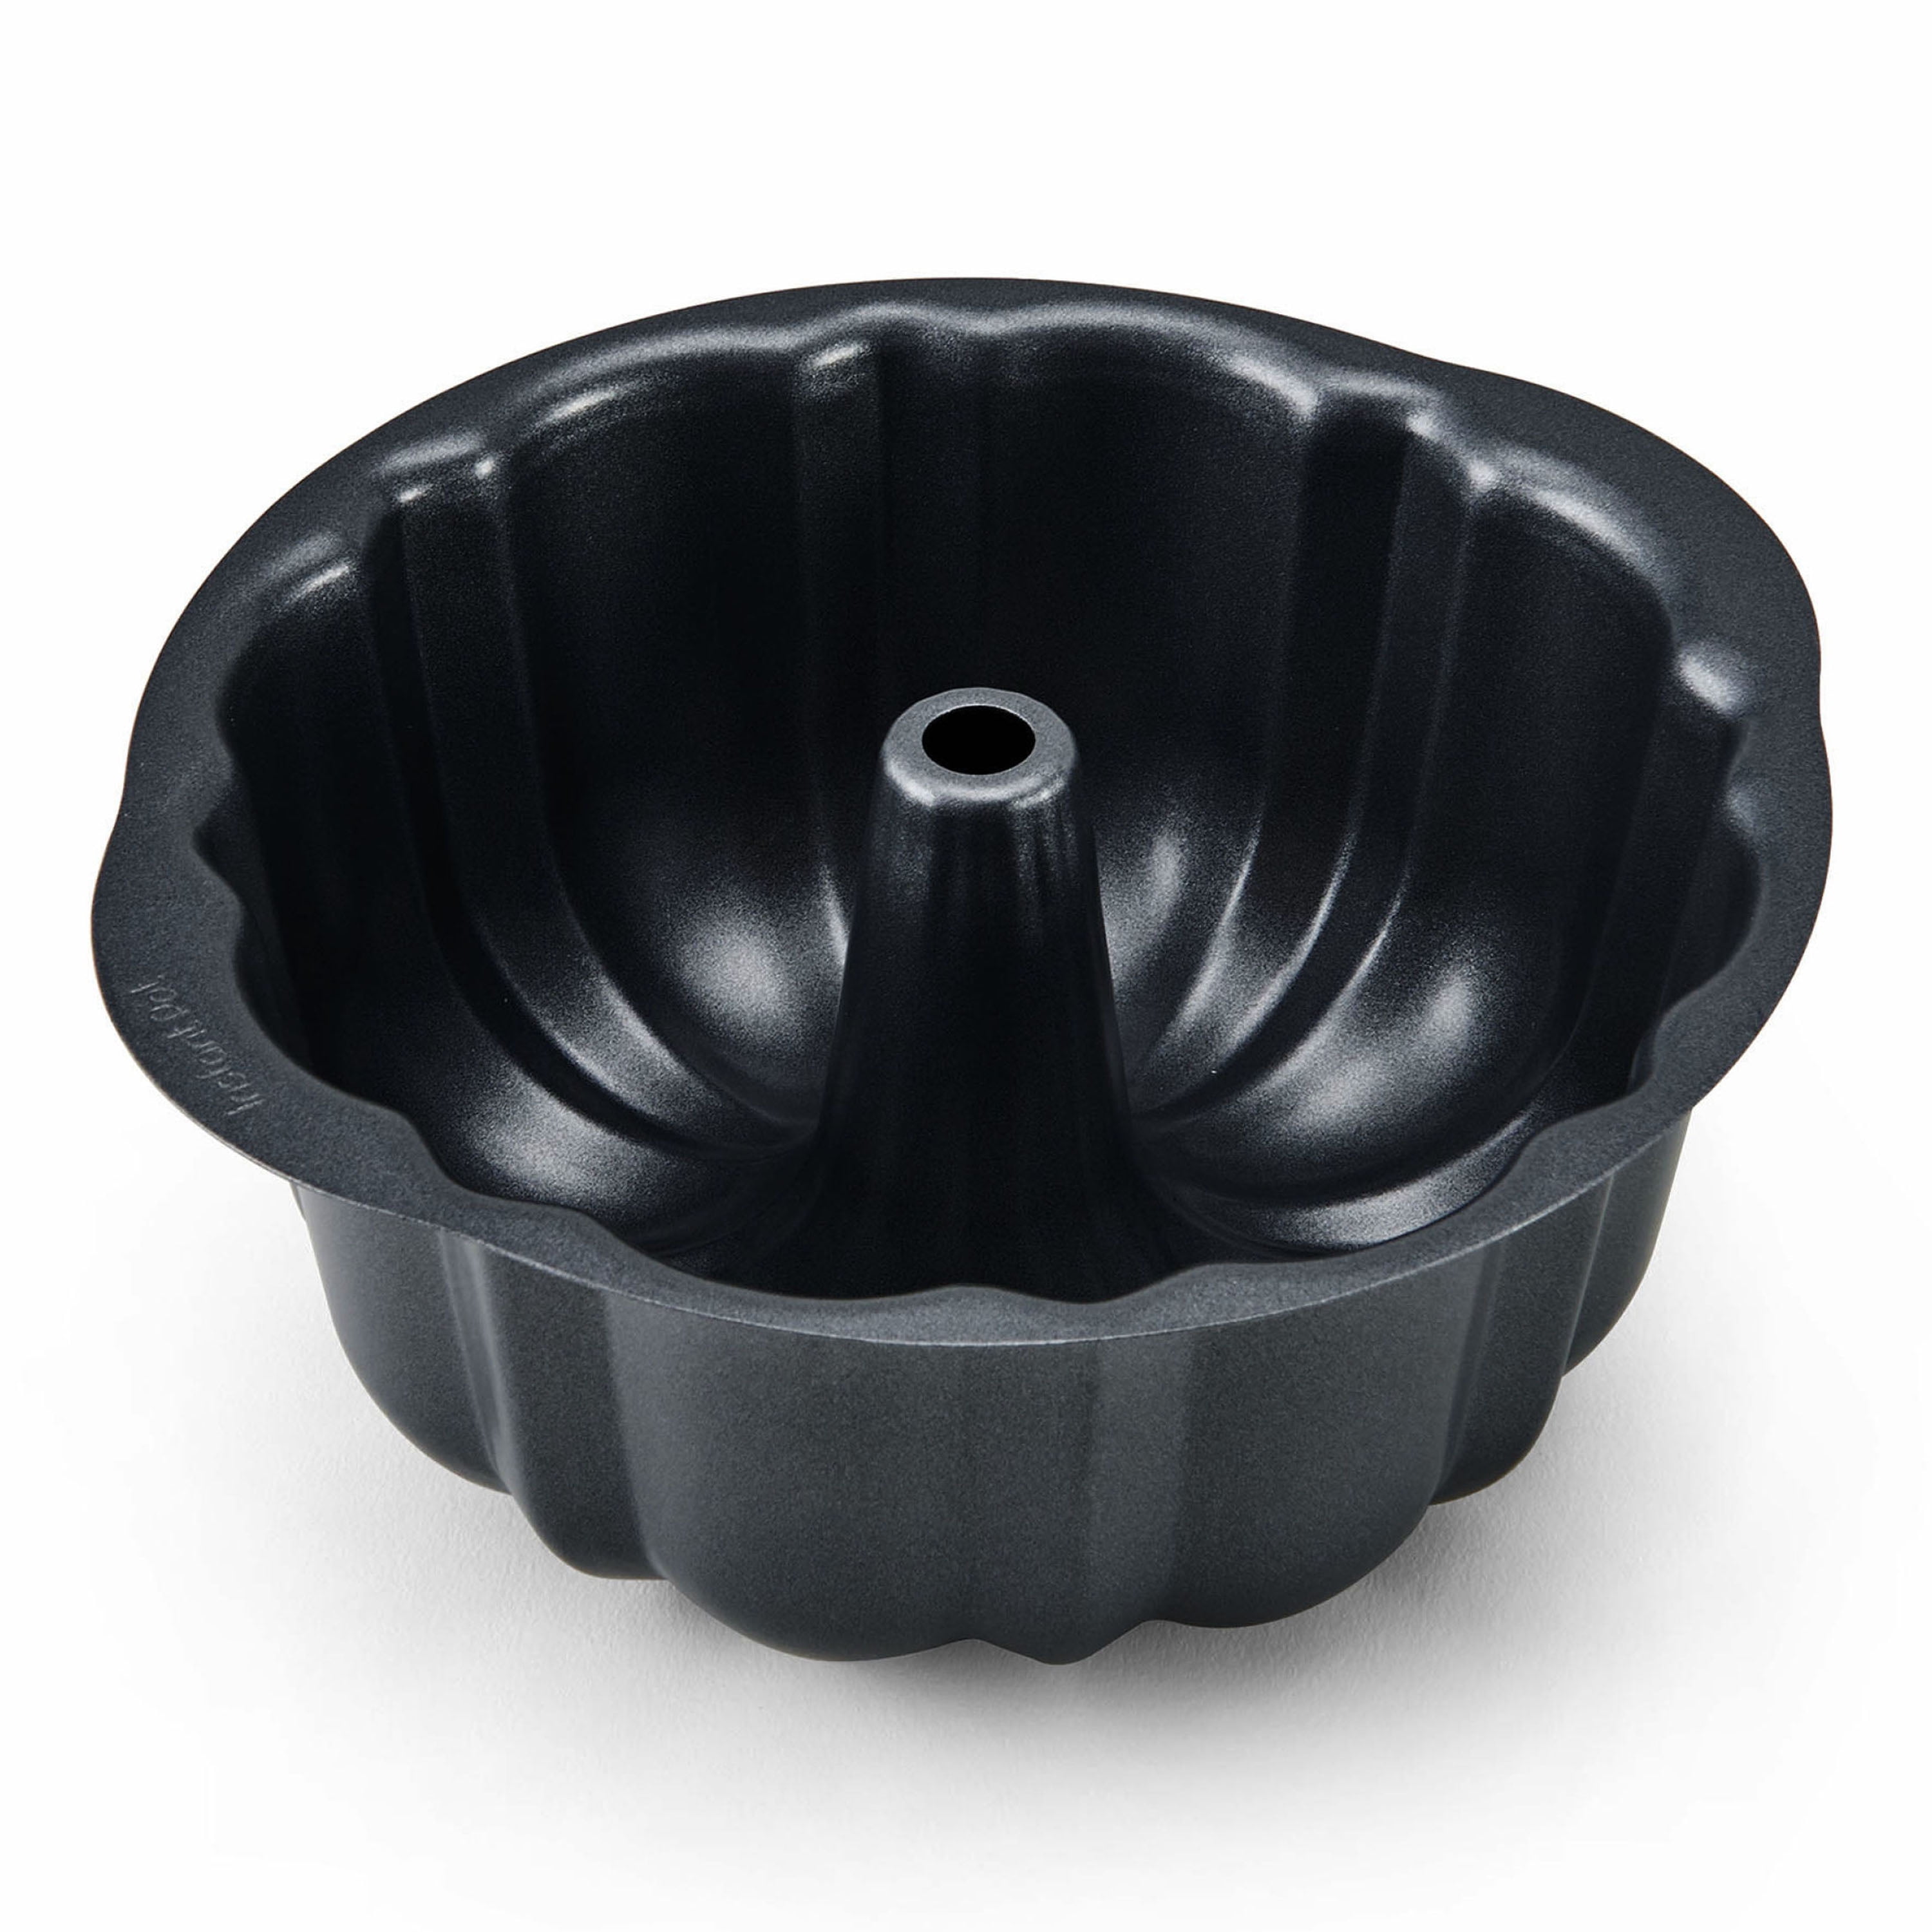 Insta-Flower Pan - Cast Aluminum Bundtlette Pan (Fits 3 Qt. - 8 Qt.  Devices) 